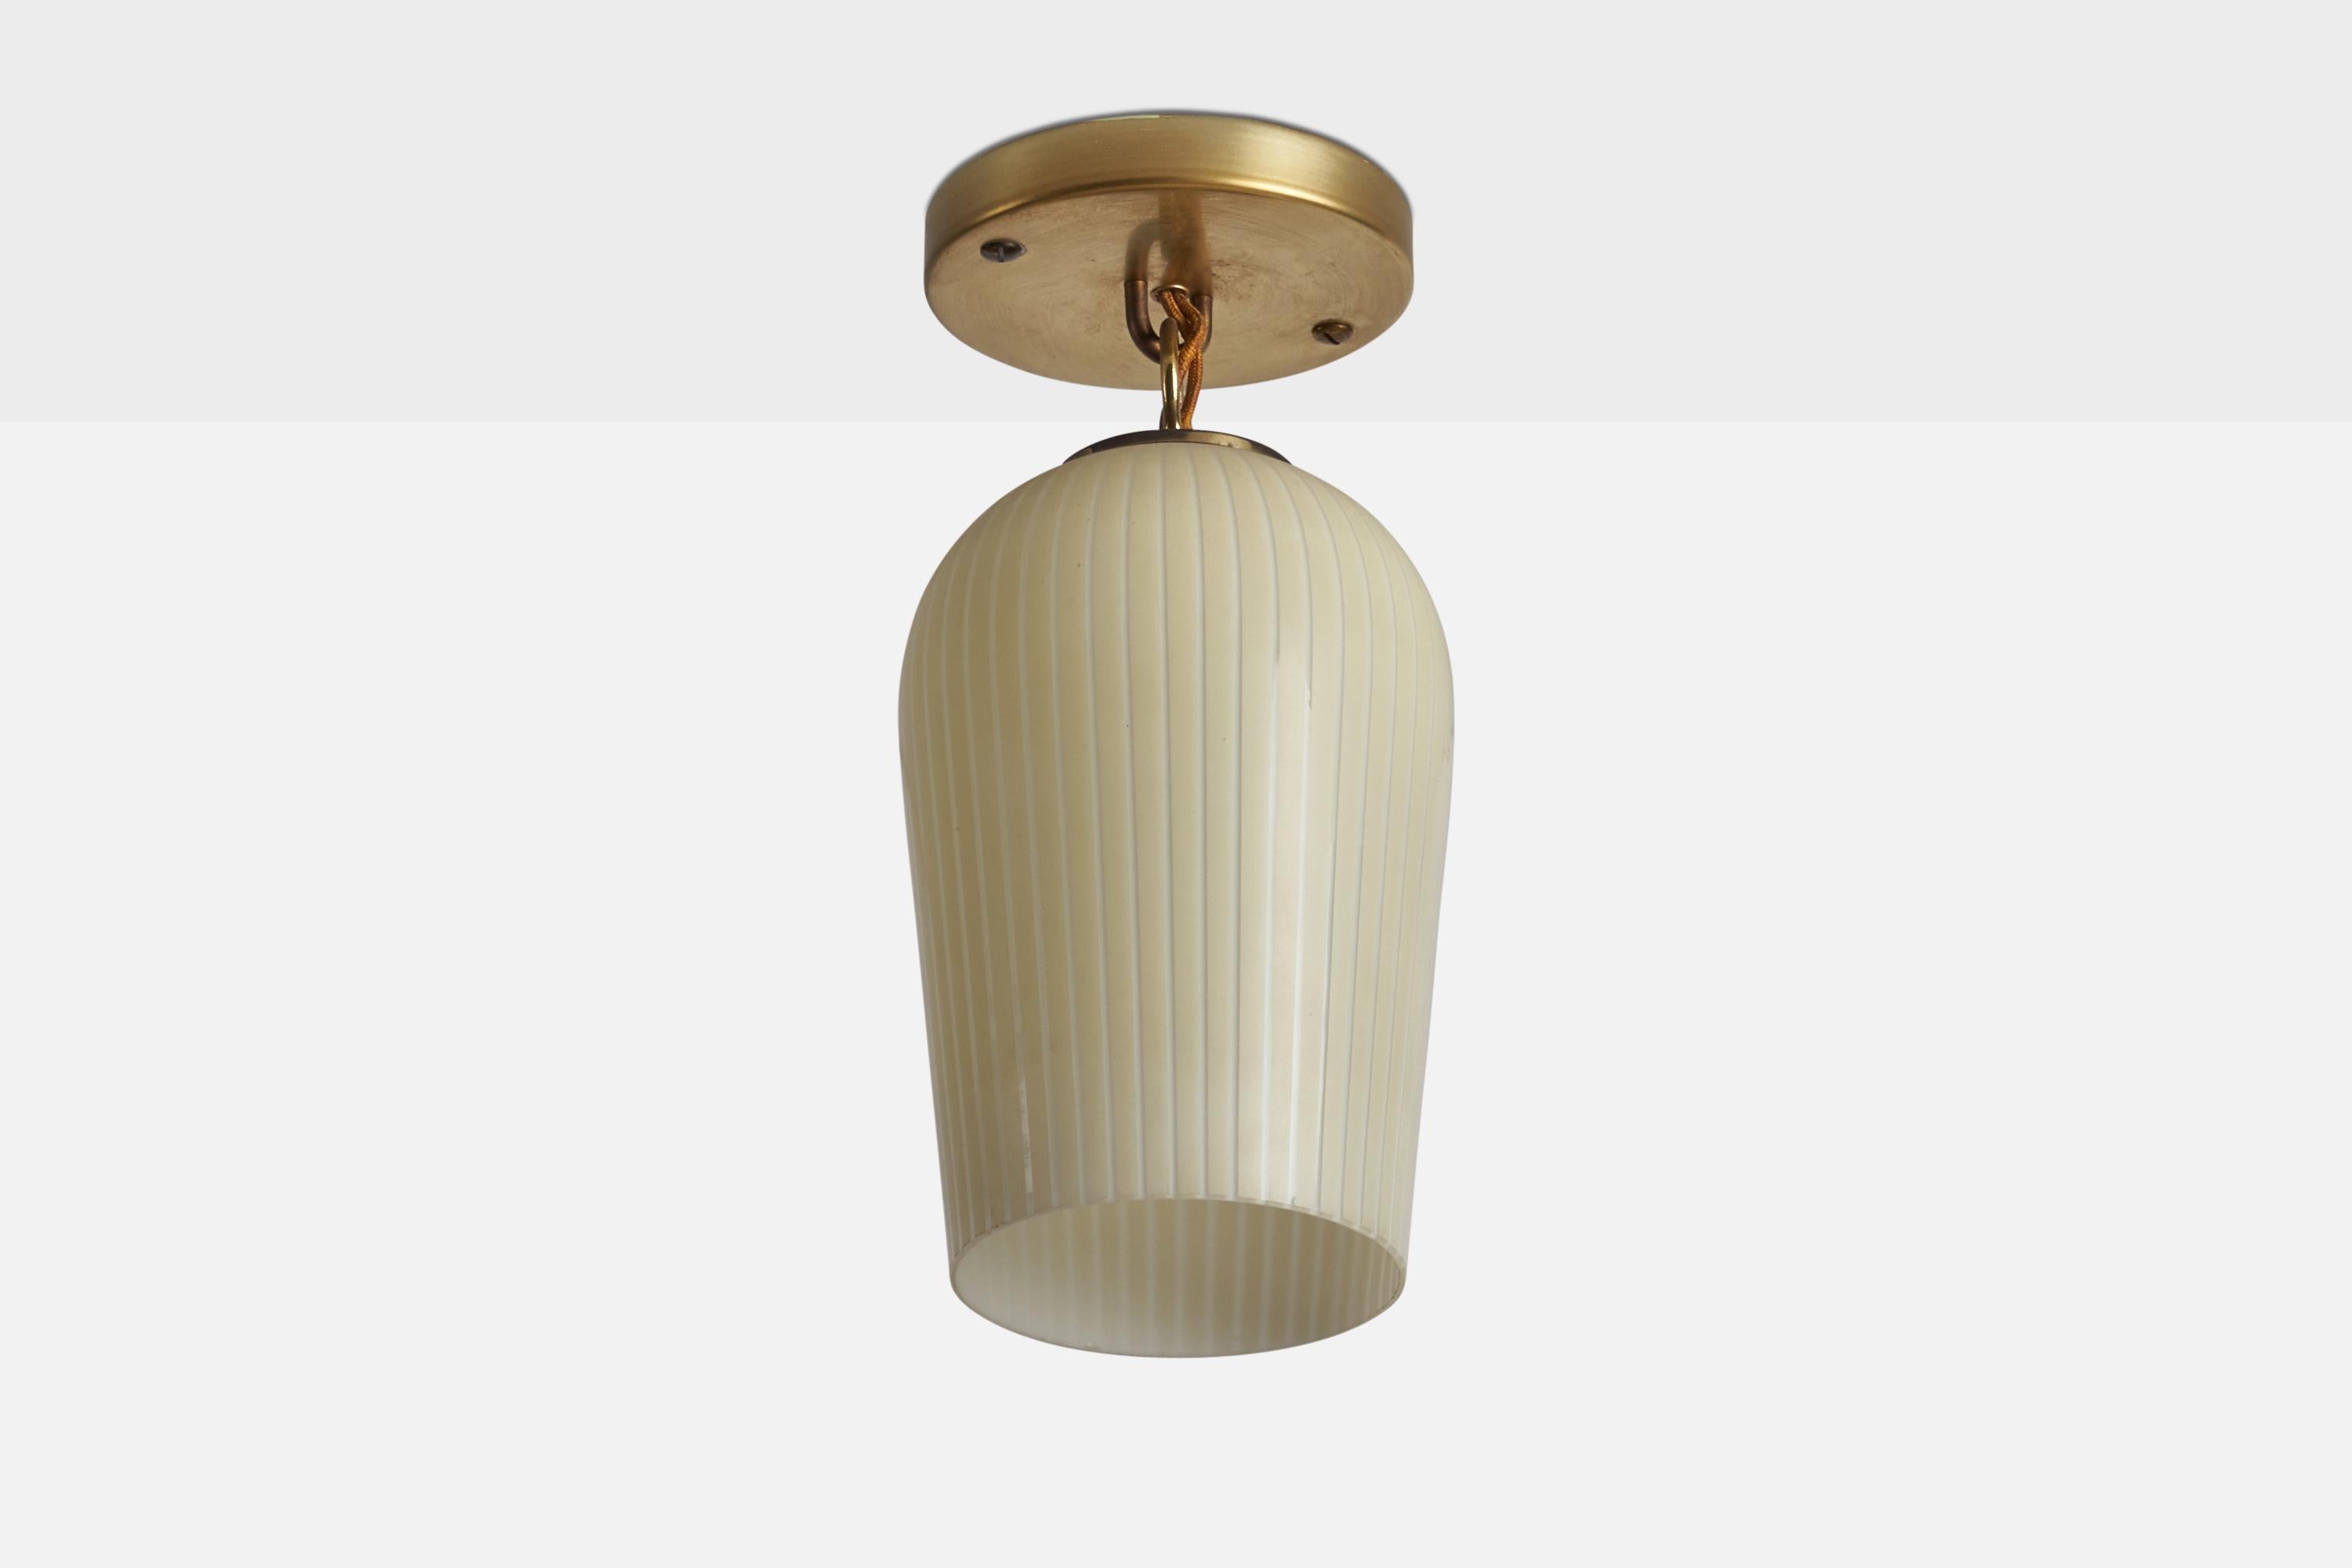 Petite lampe suspendue conçue et produite par Light-Light, États-Unis, années 1960.

Dimensions globales (pouces) : 10